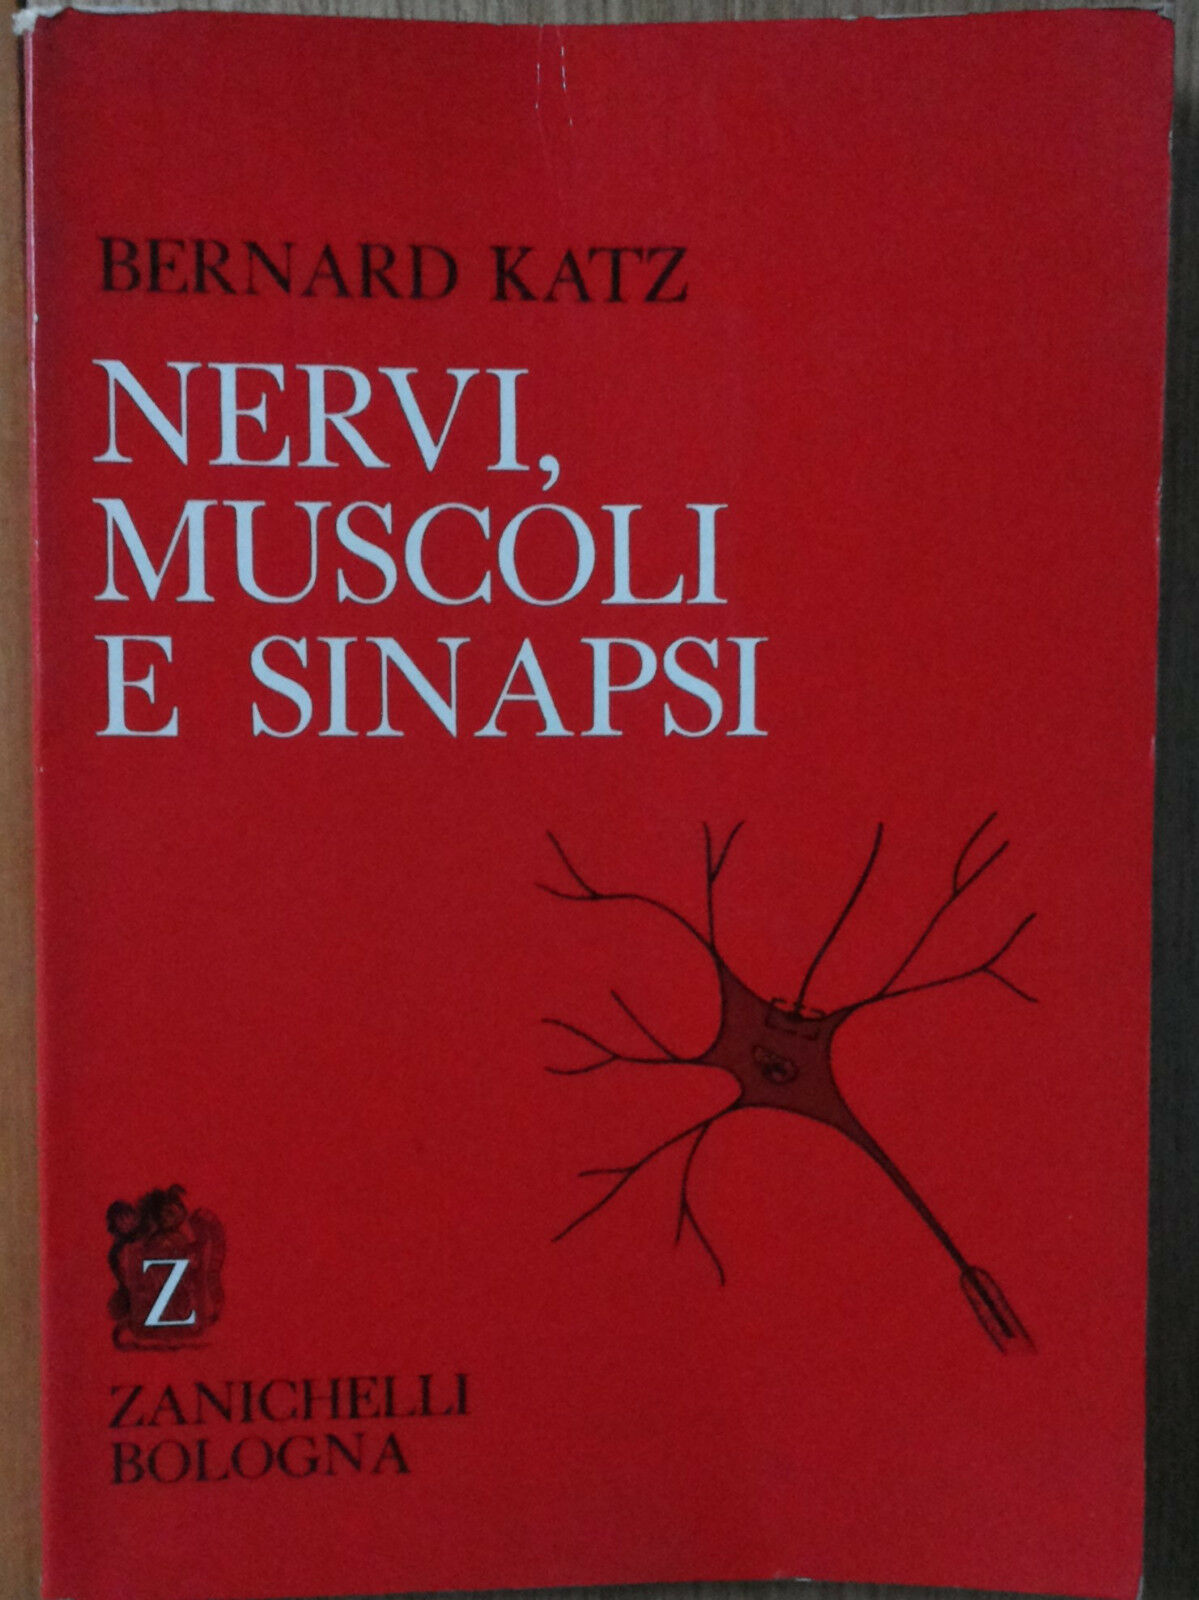 Nervi, muscoli e sinapsi - Katz - Zanichelli,1971 - R